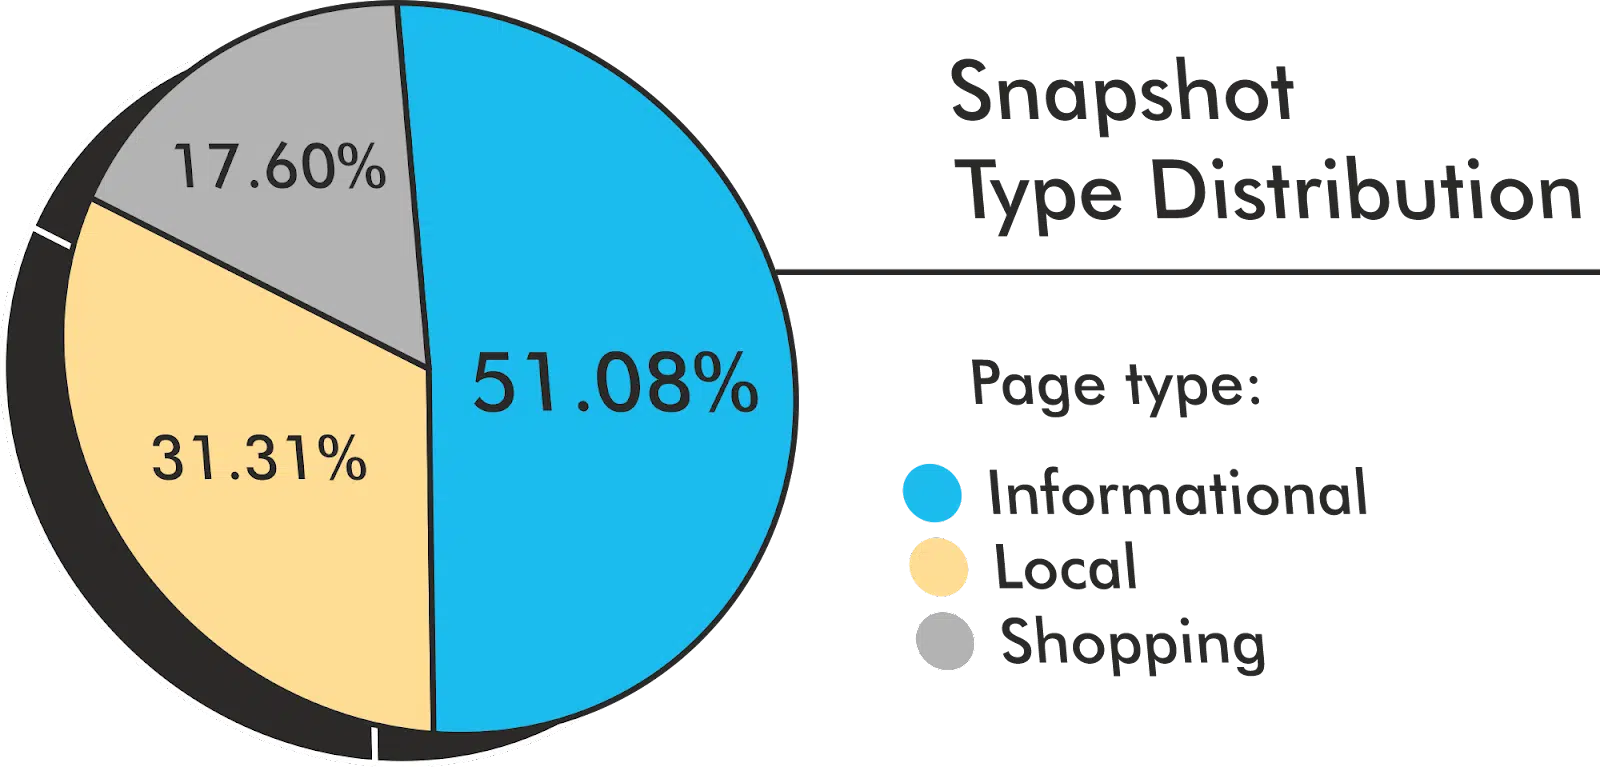 Snapshot type distribution